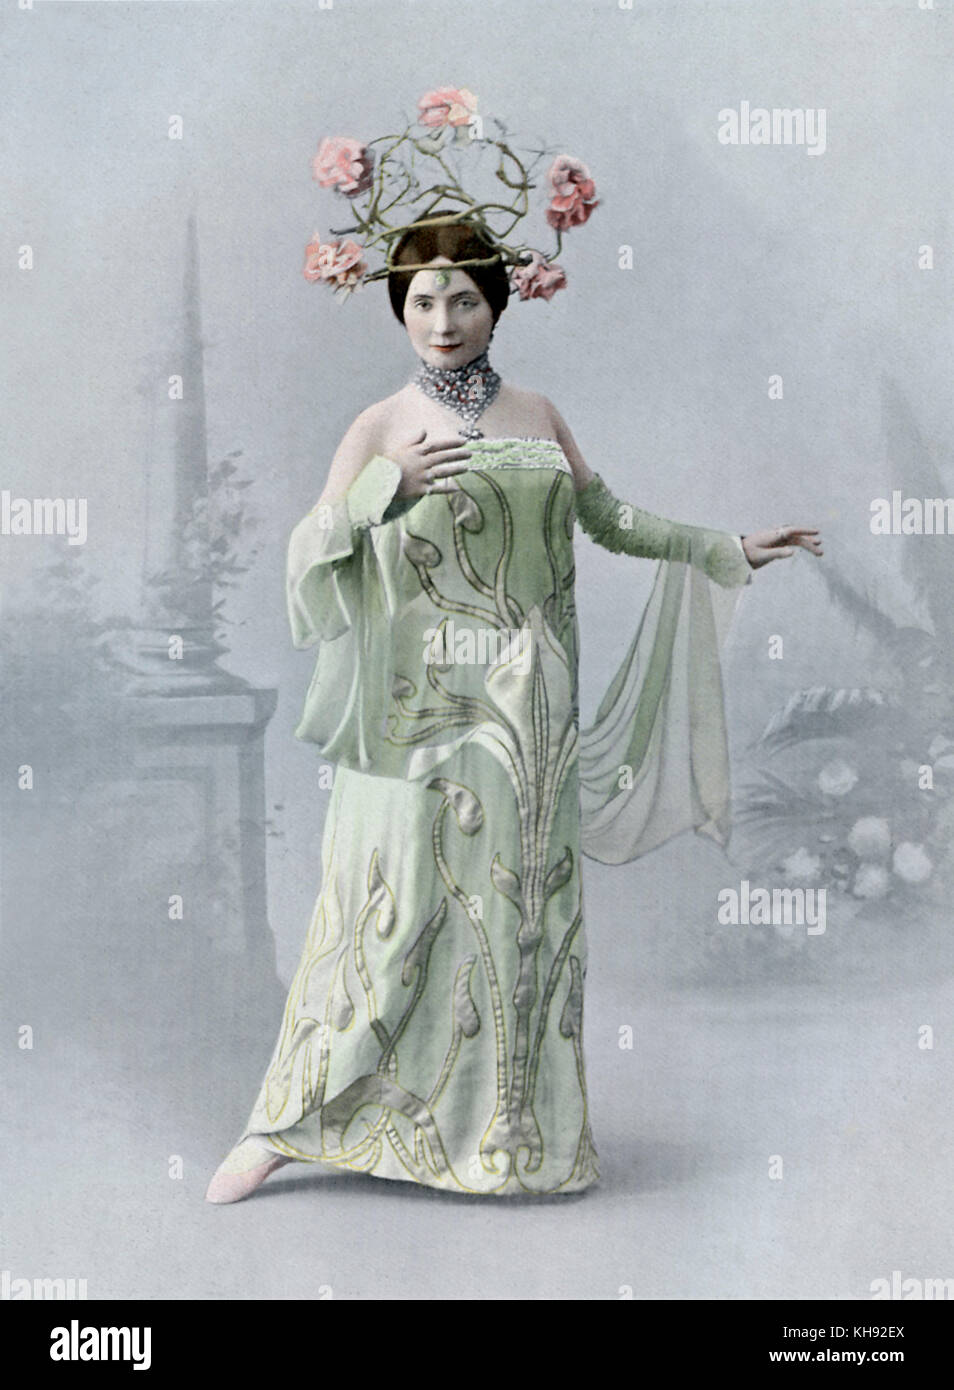 Edea Santori als La Muse in Louise - Ballett von Charpentier. Am Théâtre National de l'Opéra Comique, Paris, Frankreich, 1901 durchgeführt. Ungewöhnliche Kopfbedeckungen Blumen um den Kopf anzuzeigen. Stockfoto